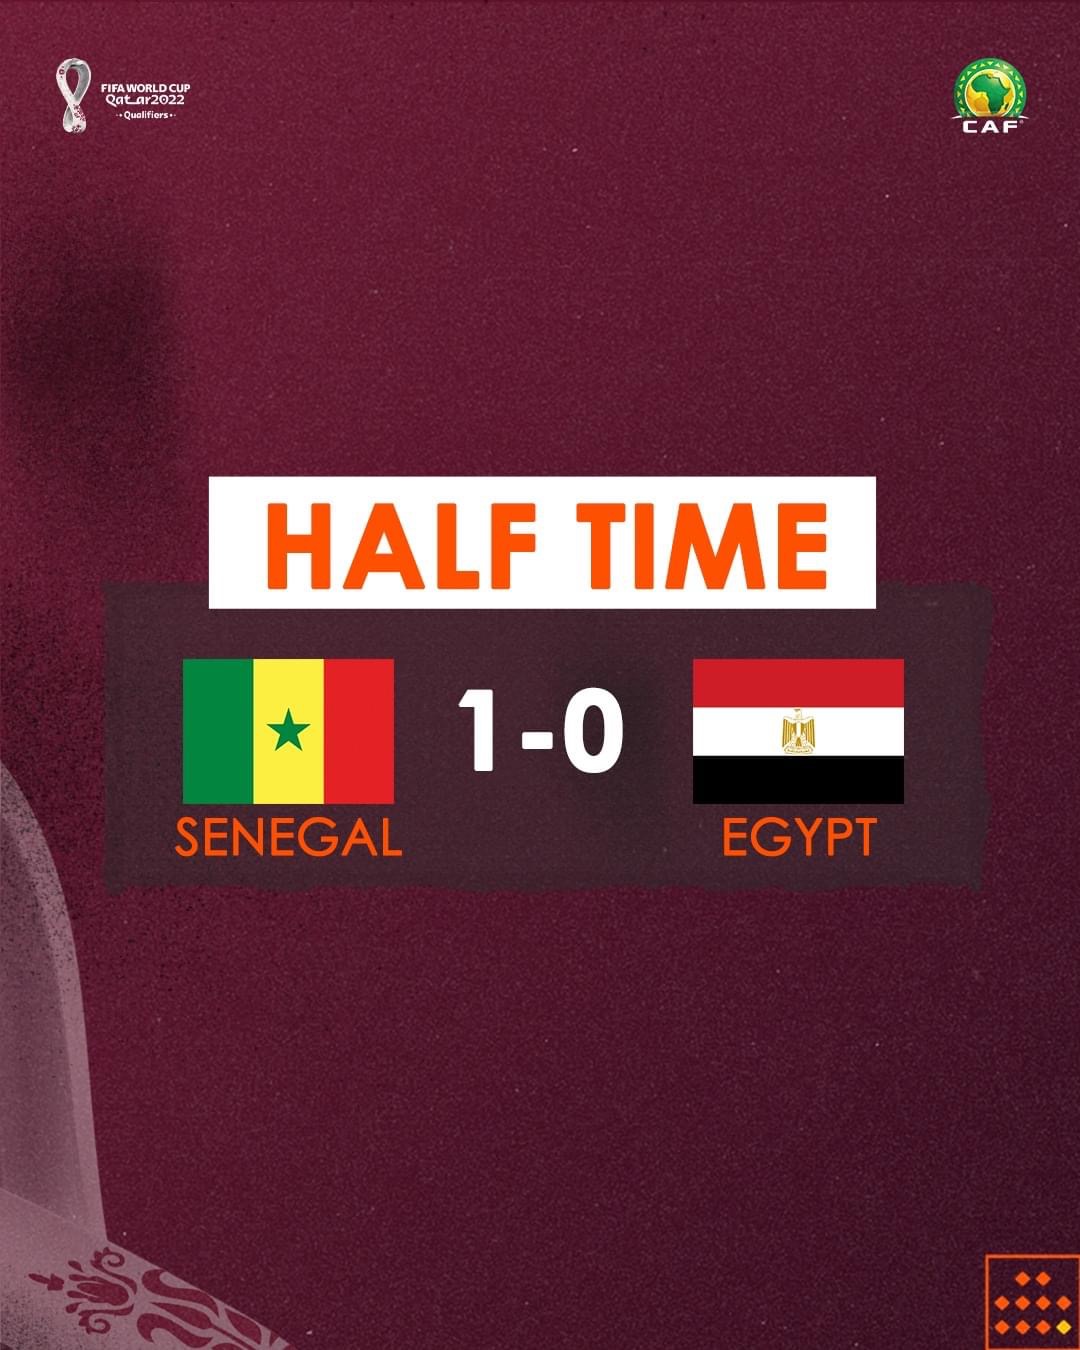 SÉNÉGAL VS ÉGYPTE : Les Lions ont refait leur retard sur les Pharaons, 1-0 à la mi-temps...